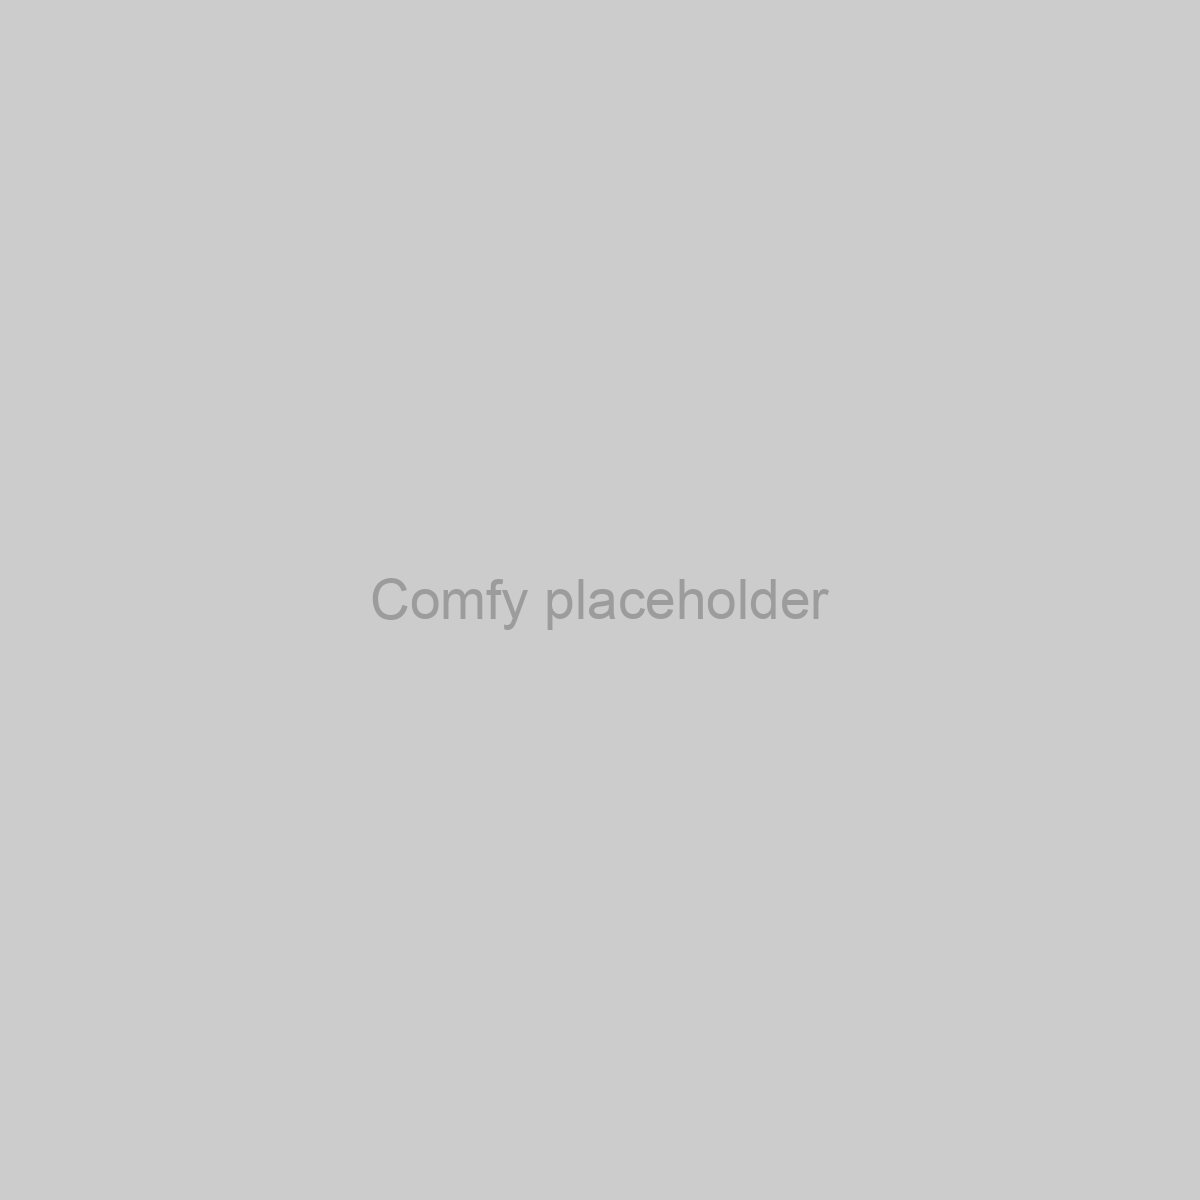 Comfy Placeholder Image